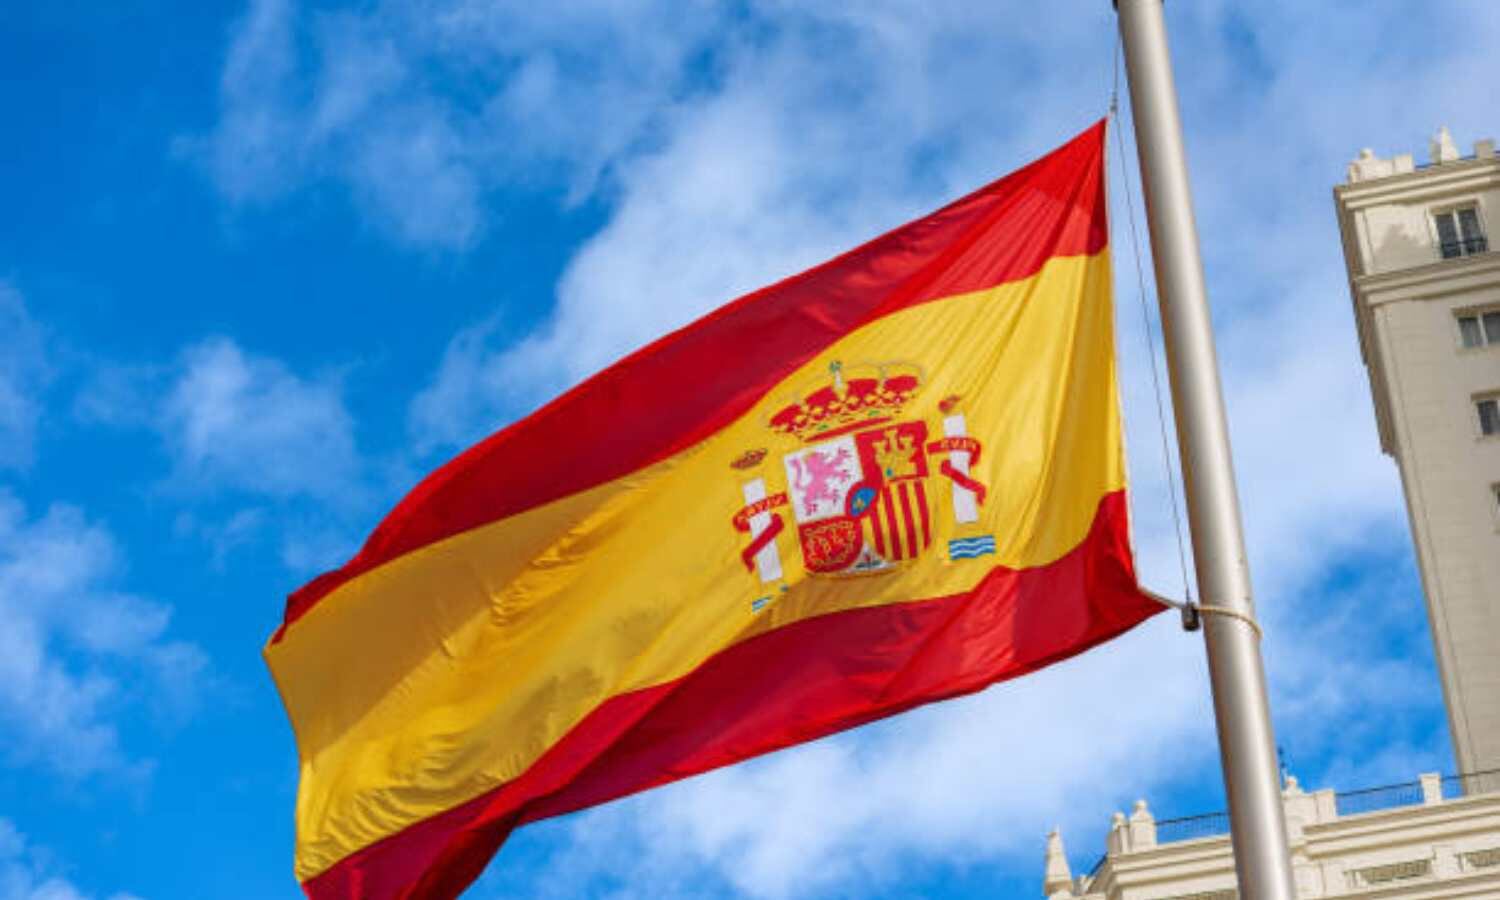 España es reconocida en LATAM como la "madre patria", por tratarse de ser los primeros colonizadores del continente americano.